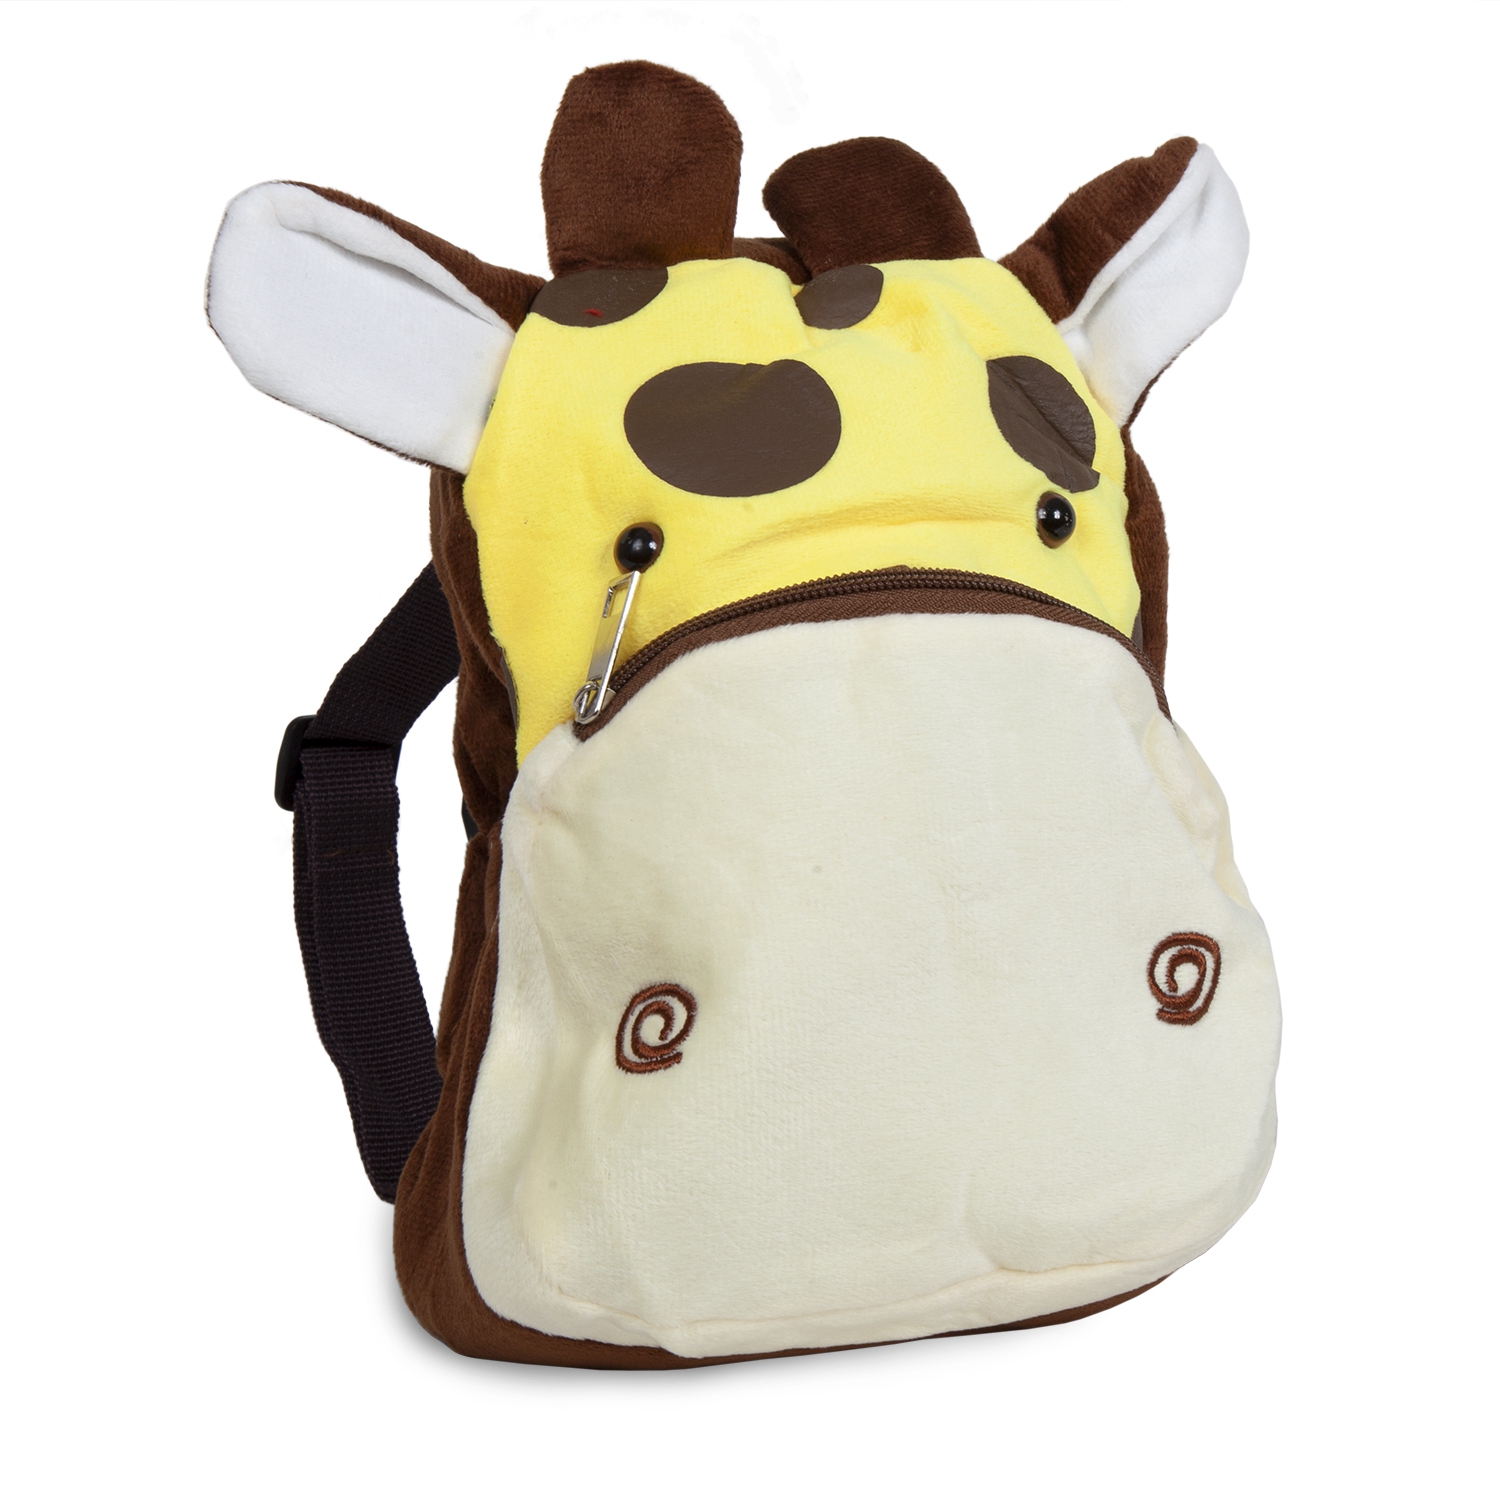 Рюкзак детский Плюшевый жирафик желто-коричневый 19*8*23 см